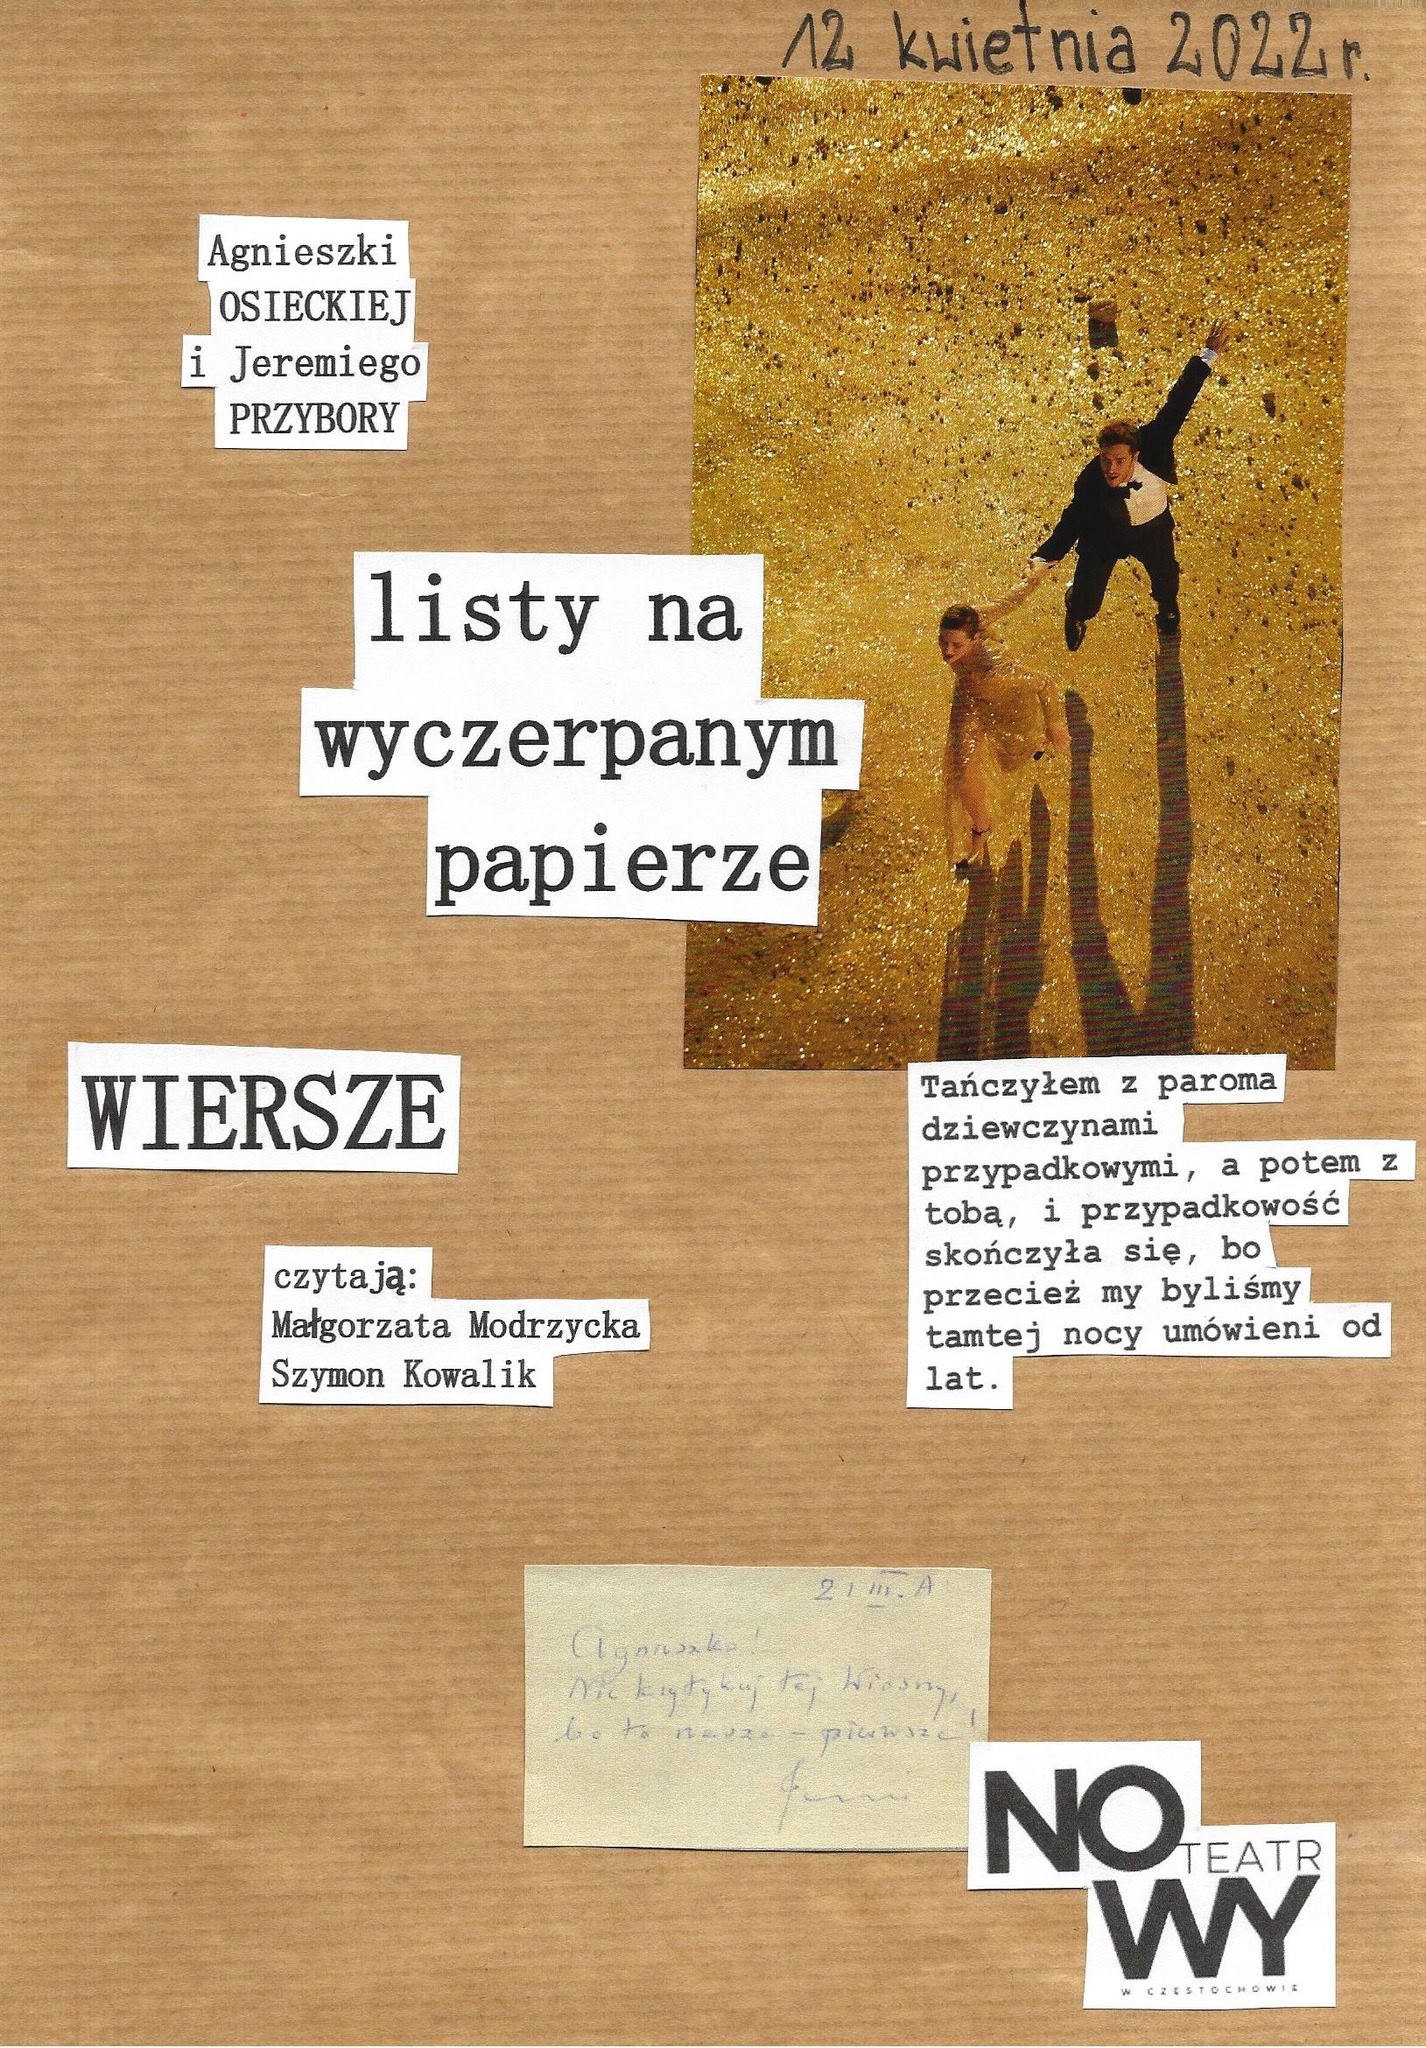 Salon Poezji Agnieszki Osieckiej i Jeremiego Przybory w częstochowskiej Alternatywie 21 1